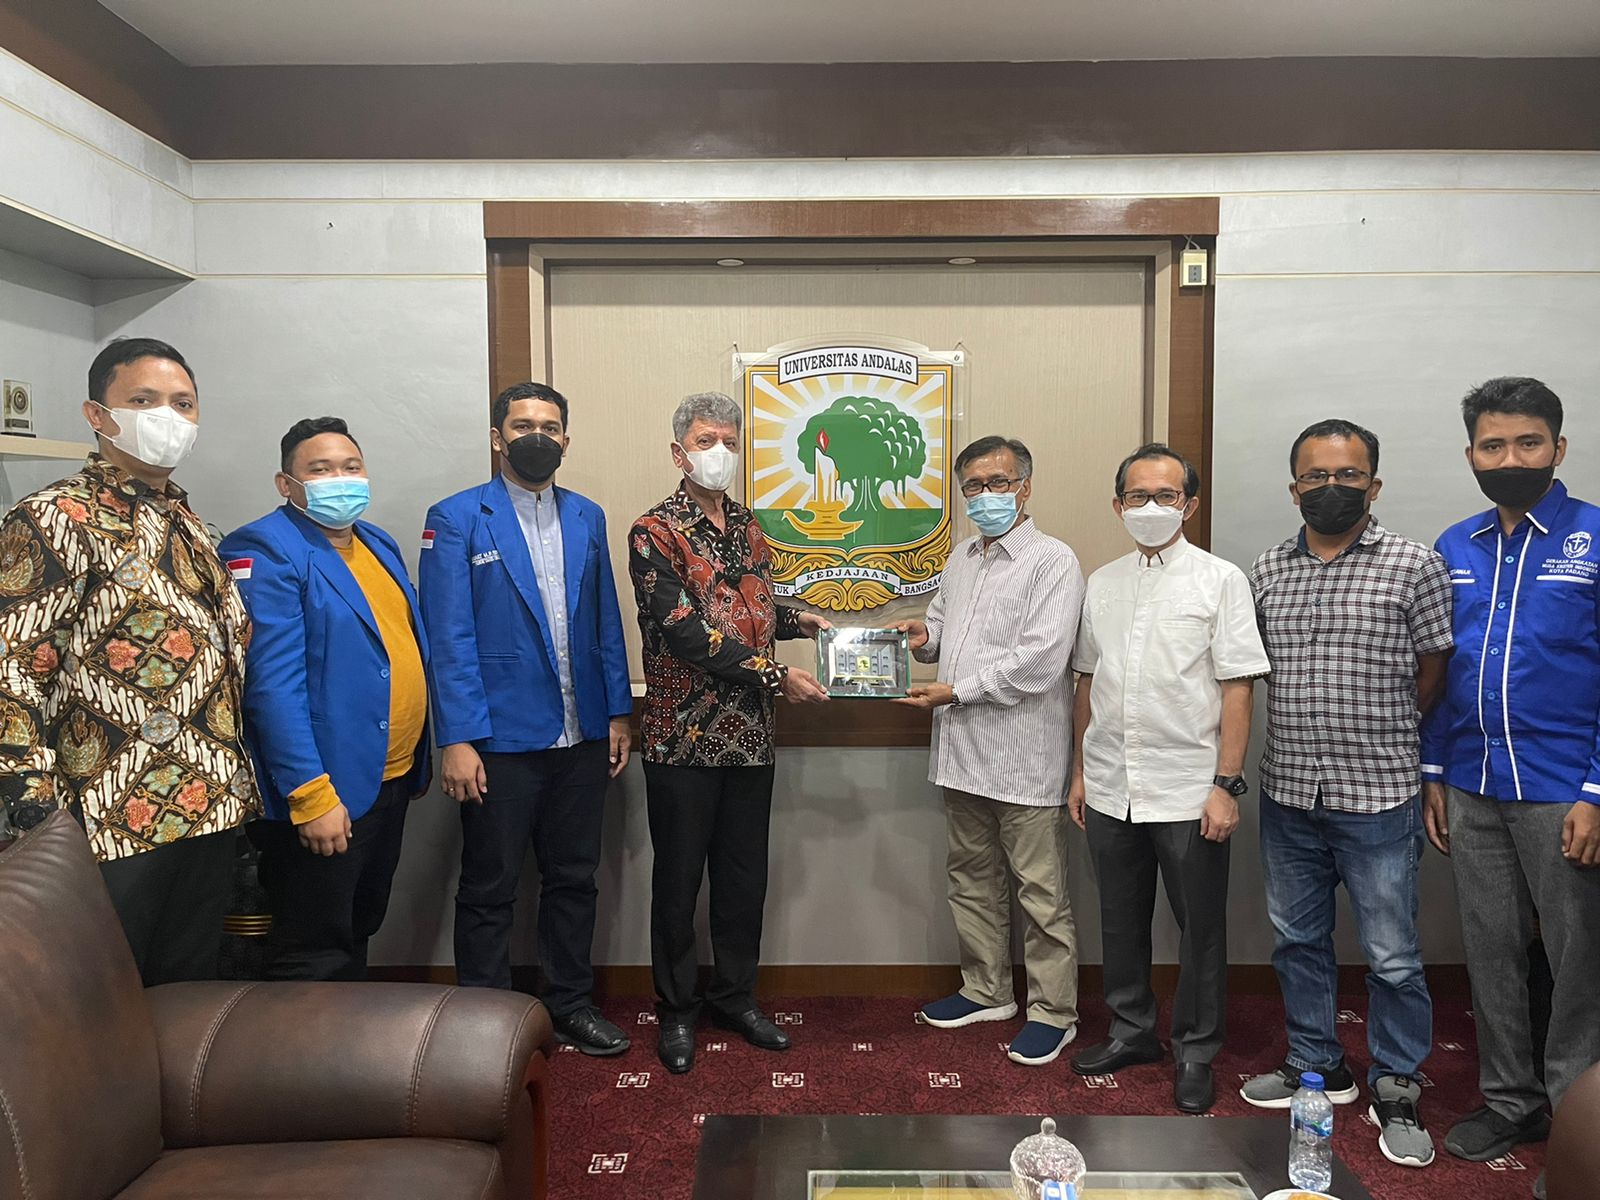 Pertama Kali Berkunjung ke Padang, Dubes Palestina Sholat Jumat di Masjid Raya Sumatera Barat